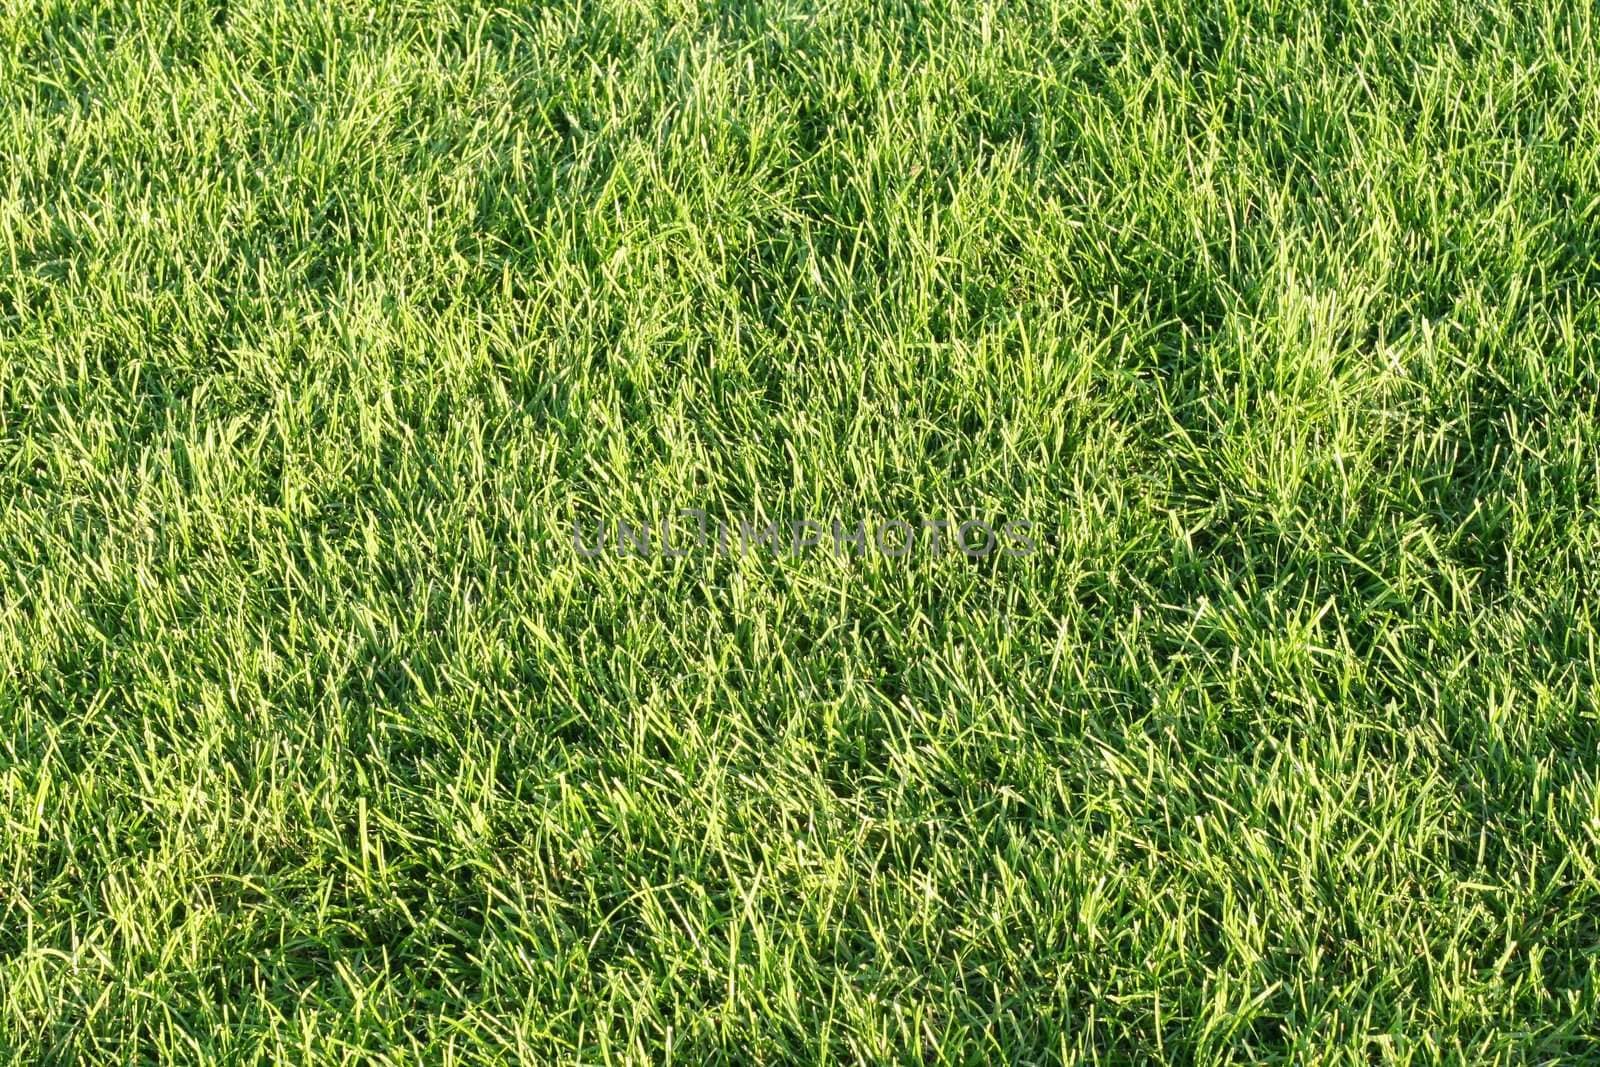 Green grassy lawn by jarenwicklund